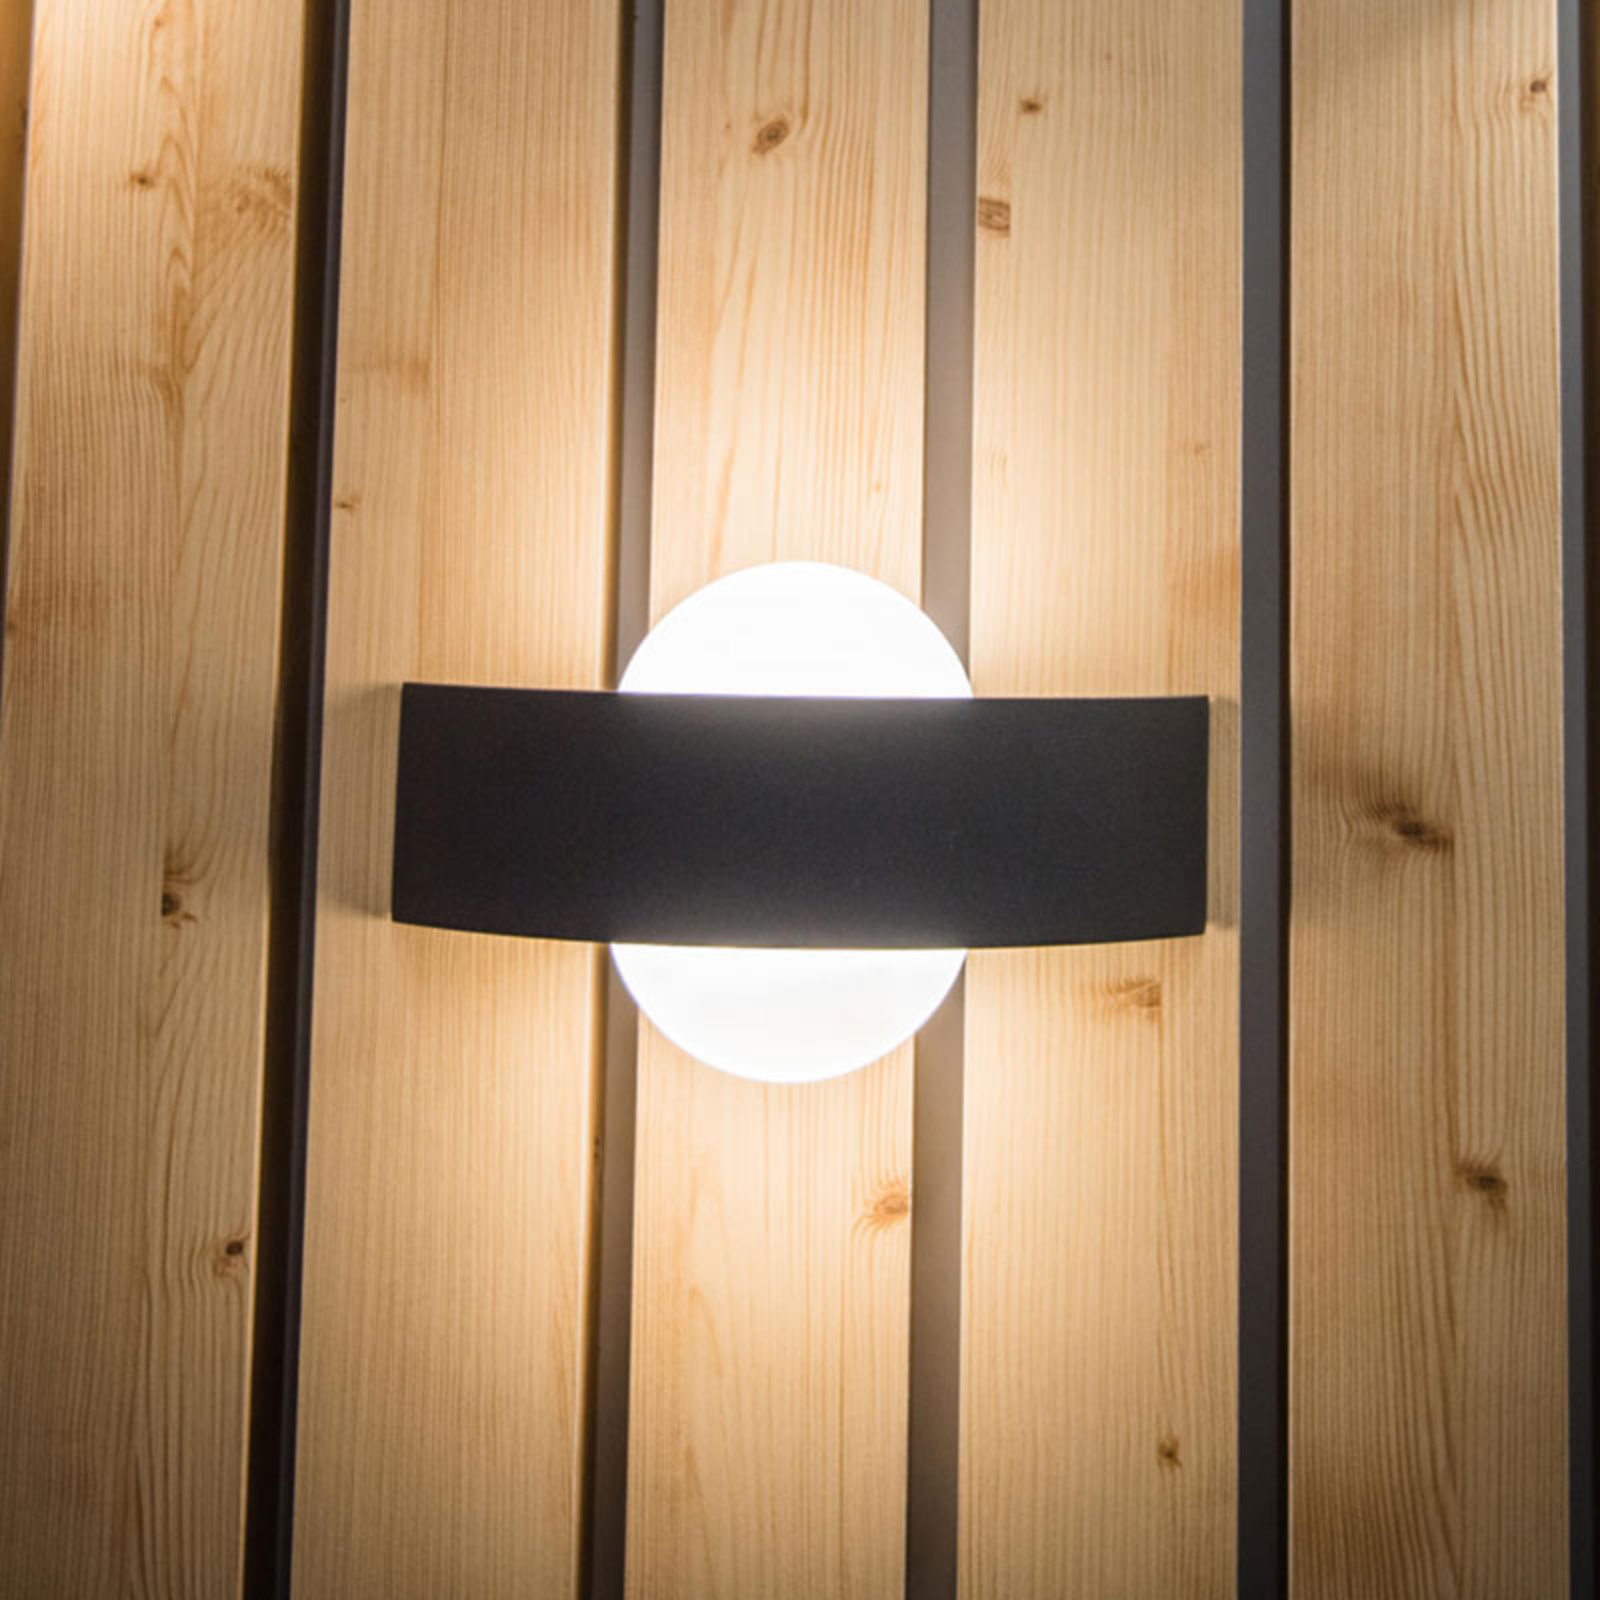 LEDVANCE Endura Style Shield Round wall lamp